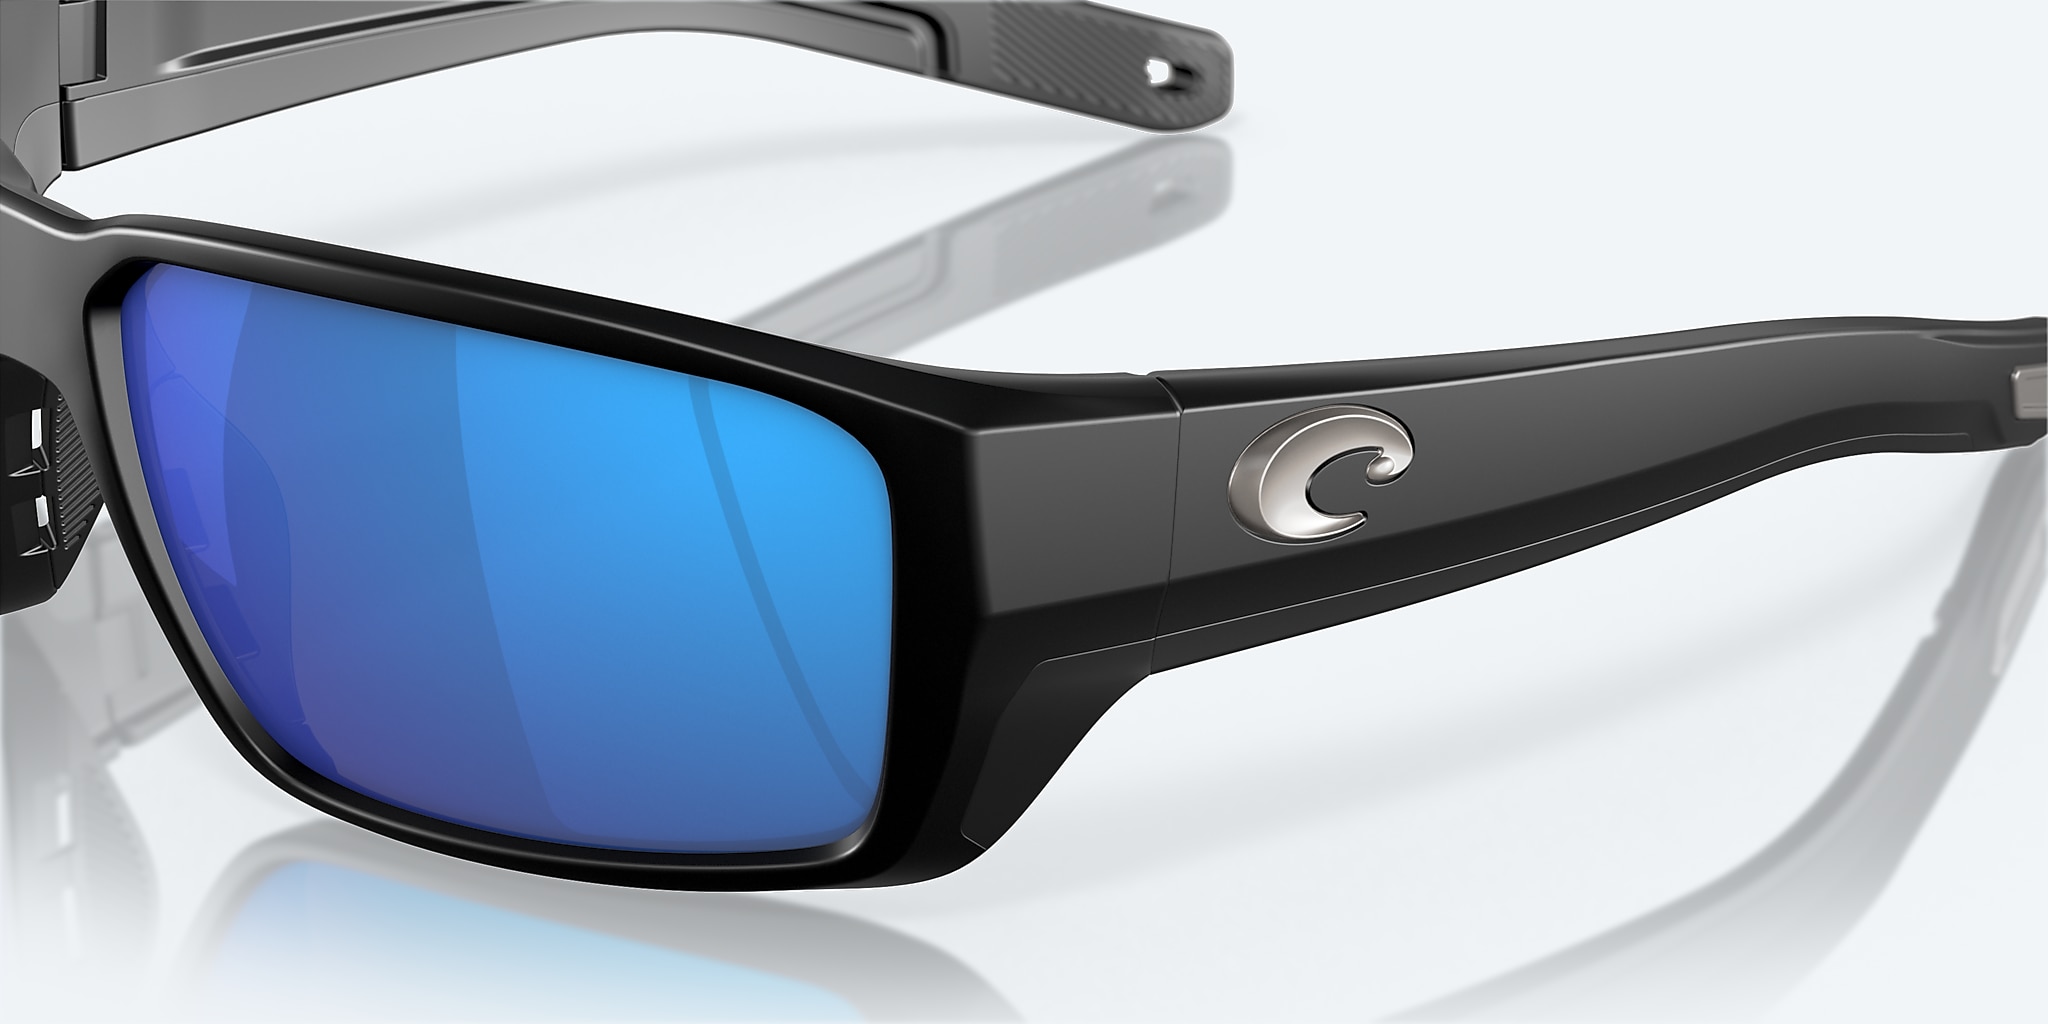 Costa Del Mar Fantail Pro Sunglasses, Matte Black / Blue Mirror